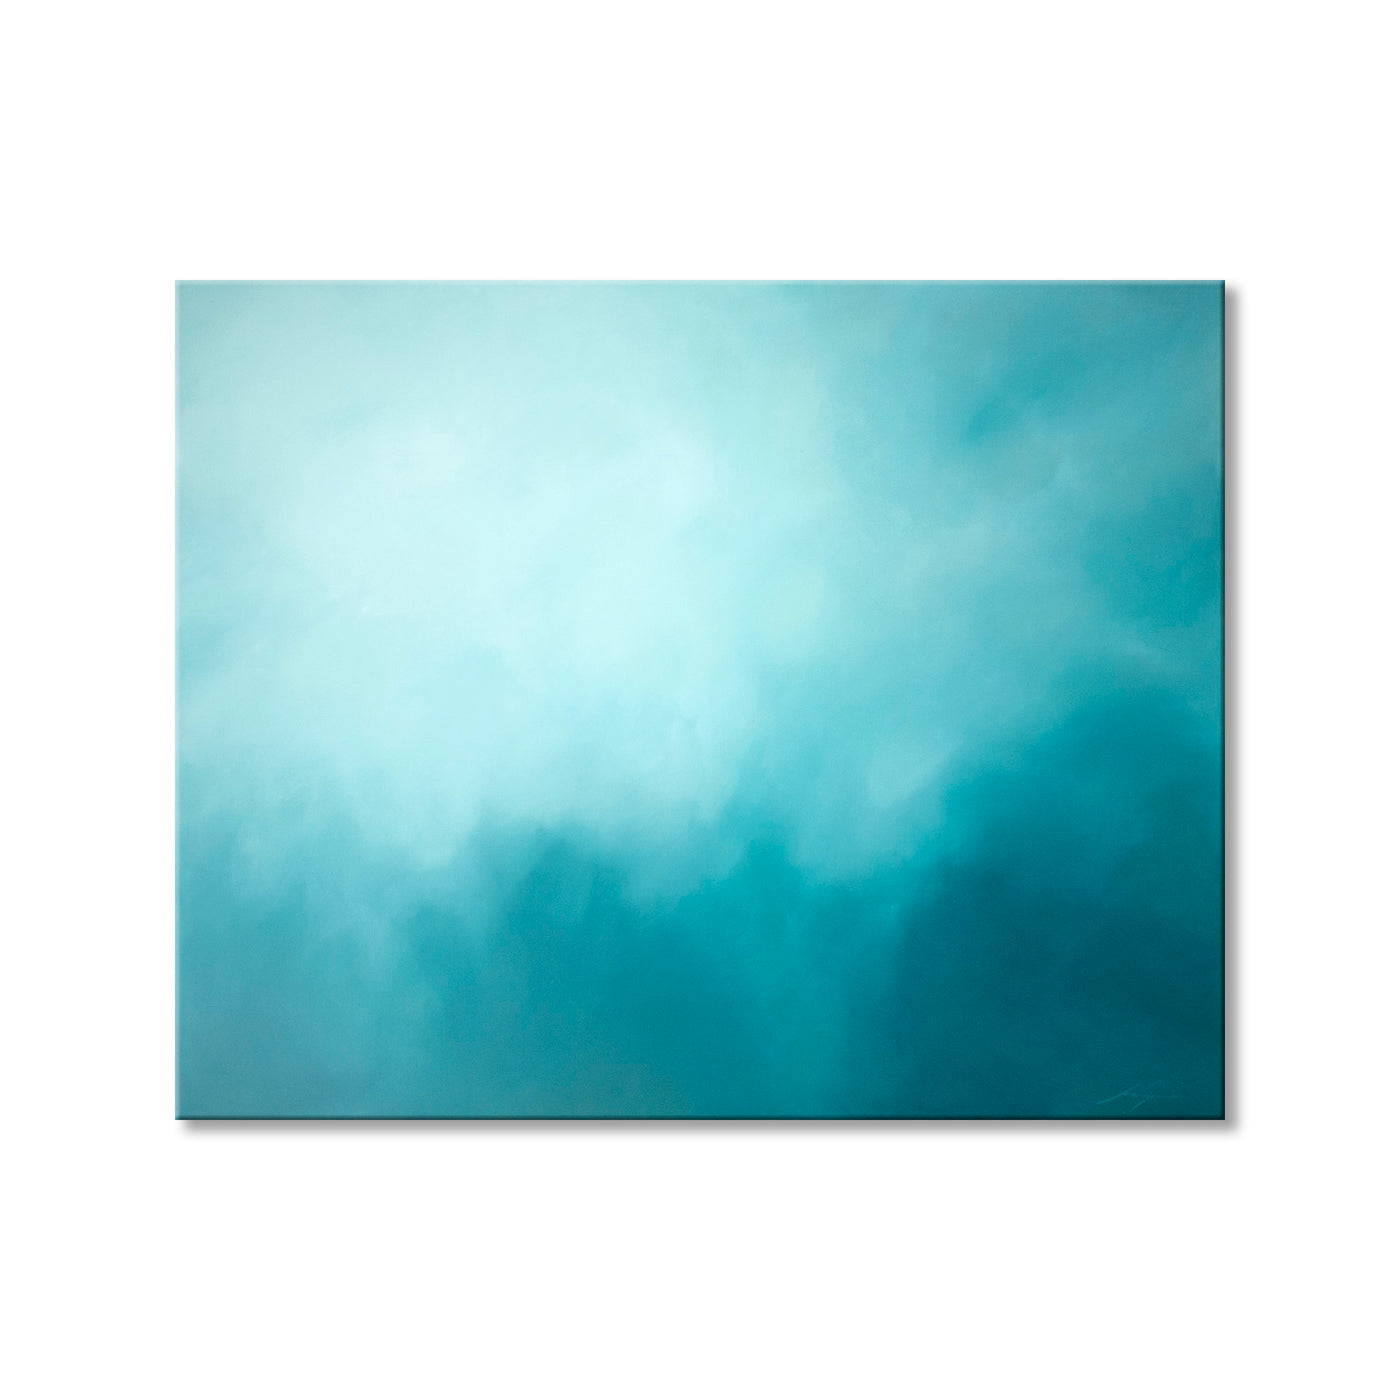 Underwater Clouds XIV